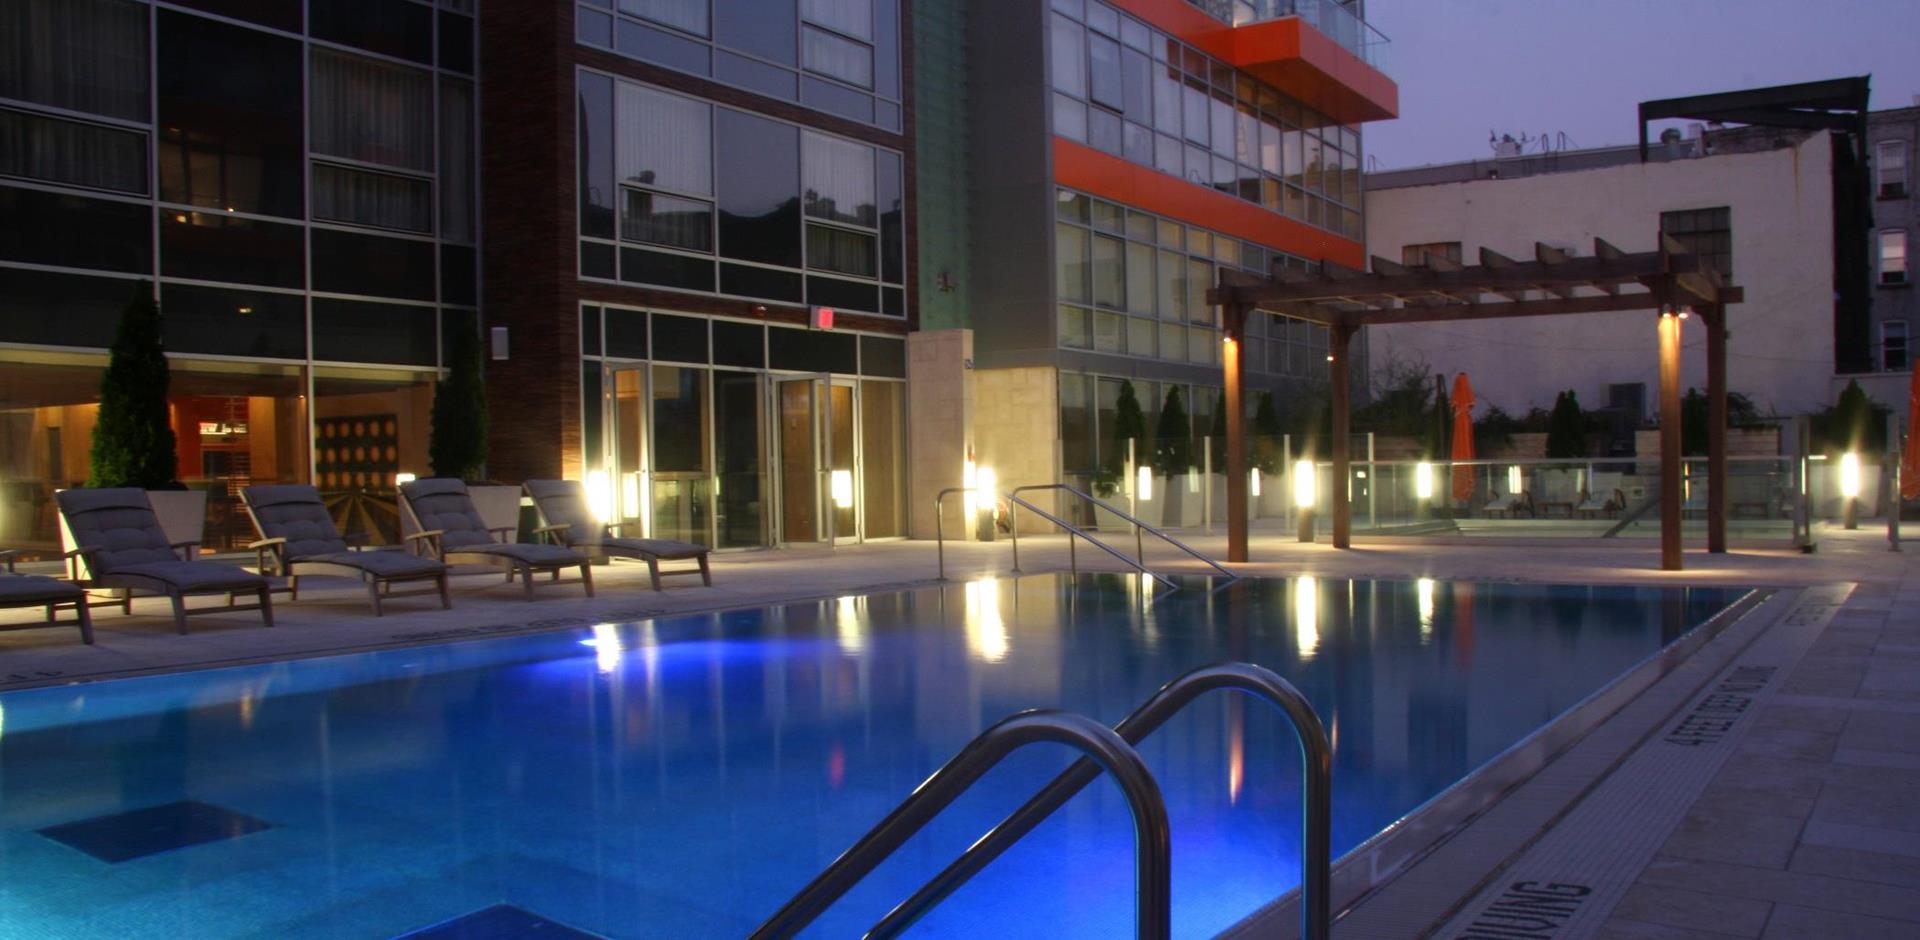 McCarren Hotel and Pool Brooklyn